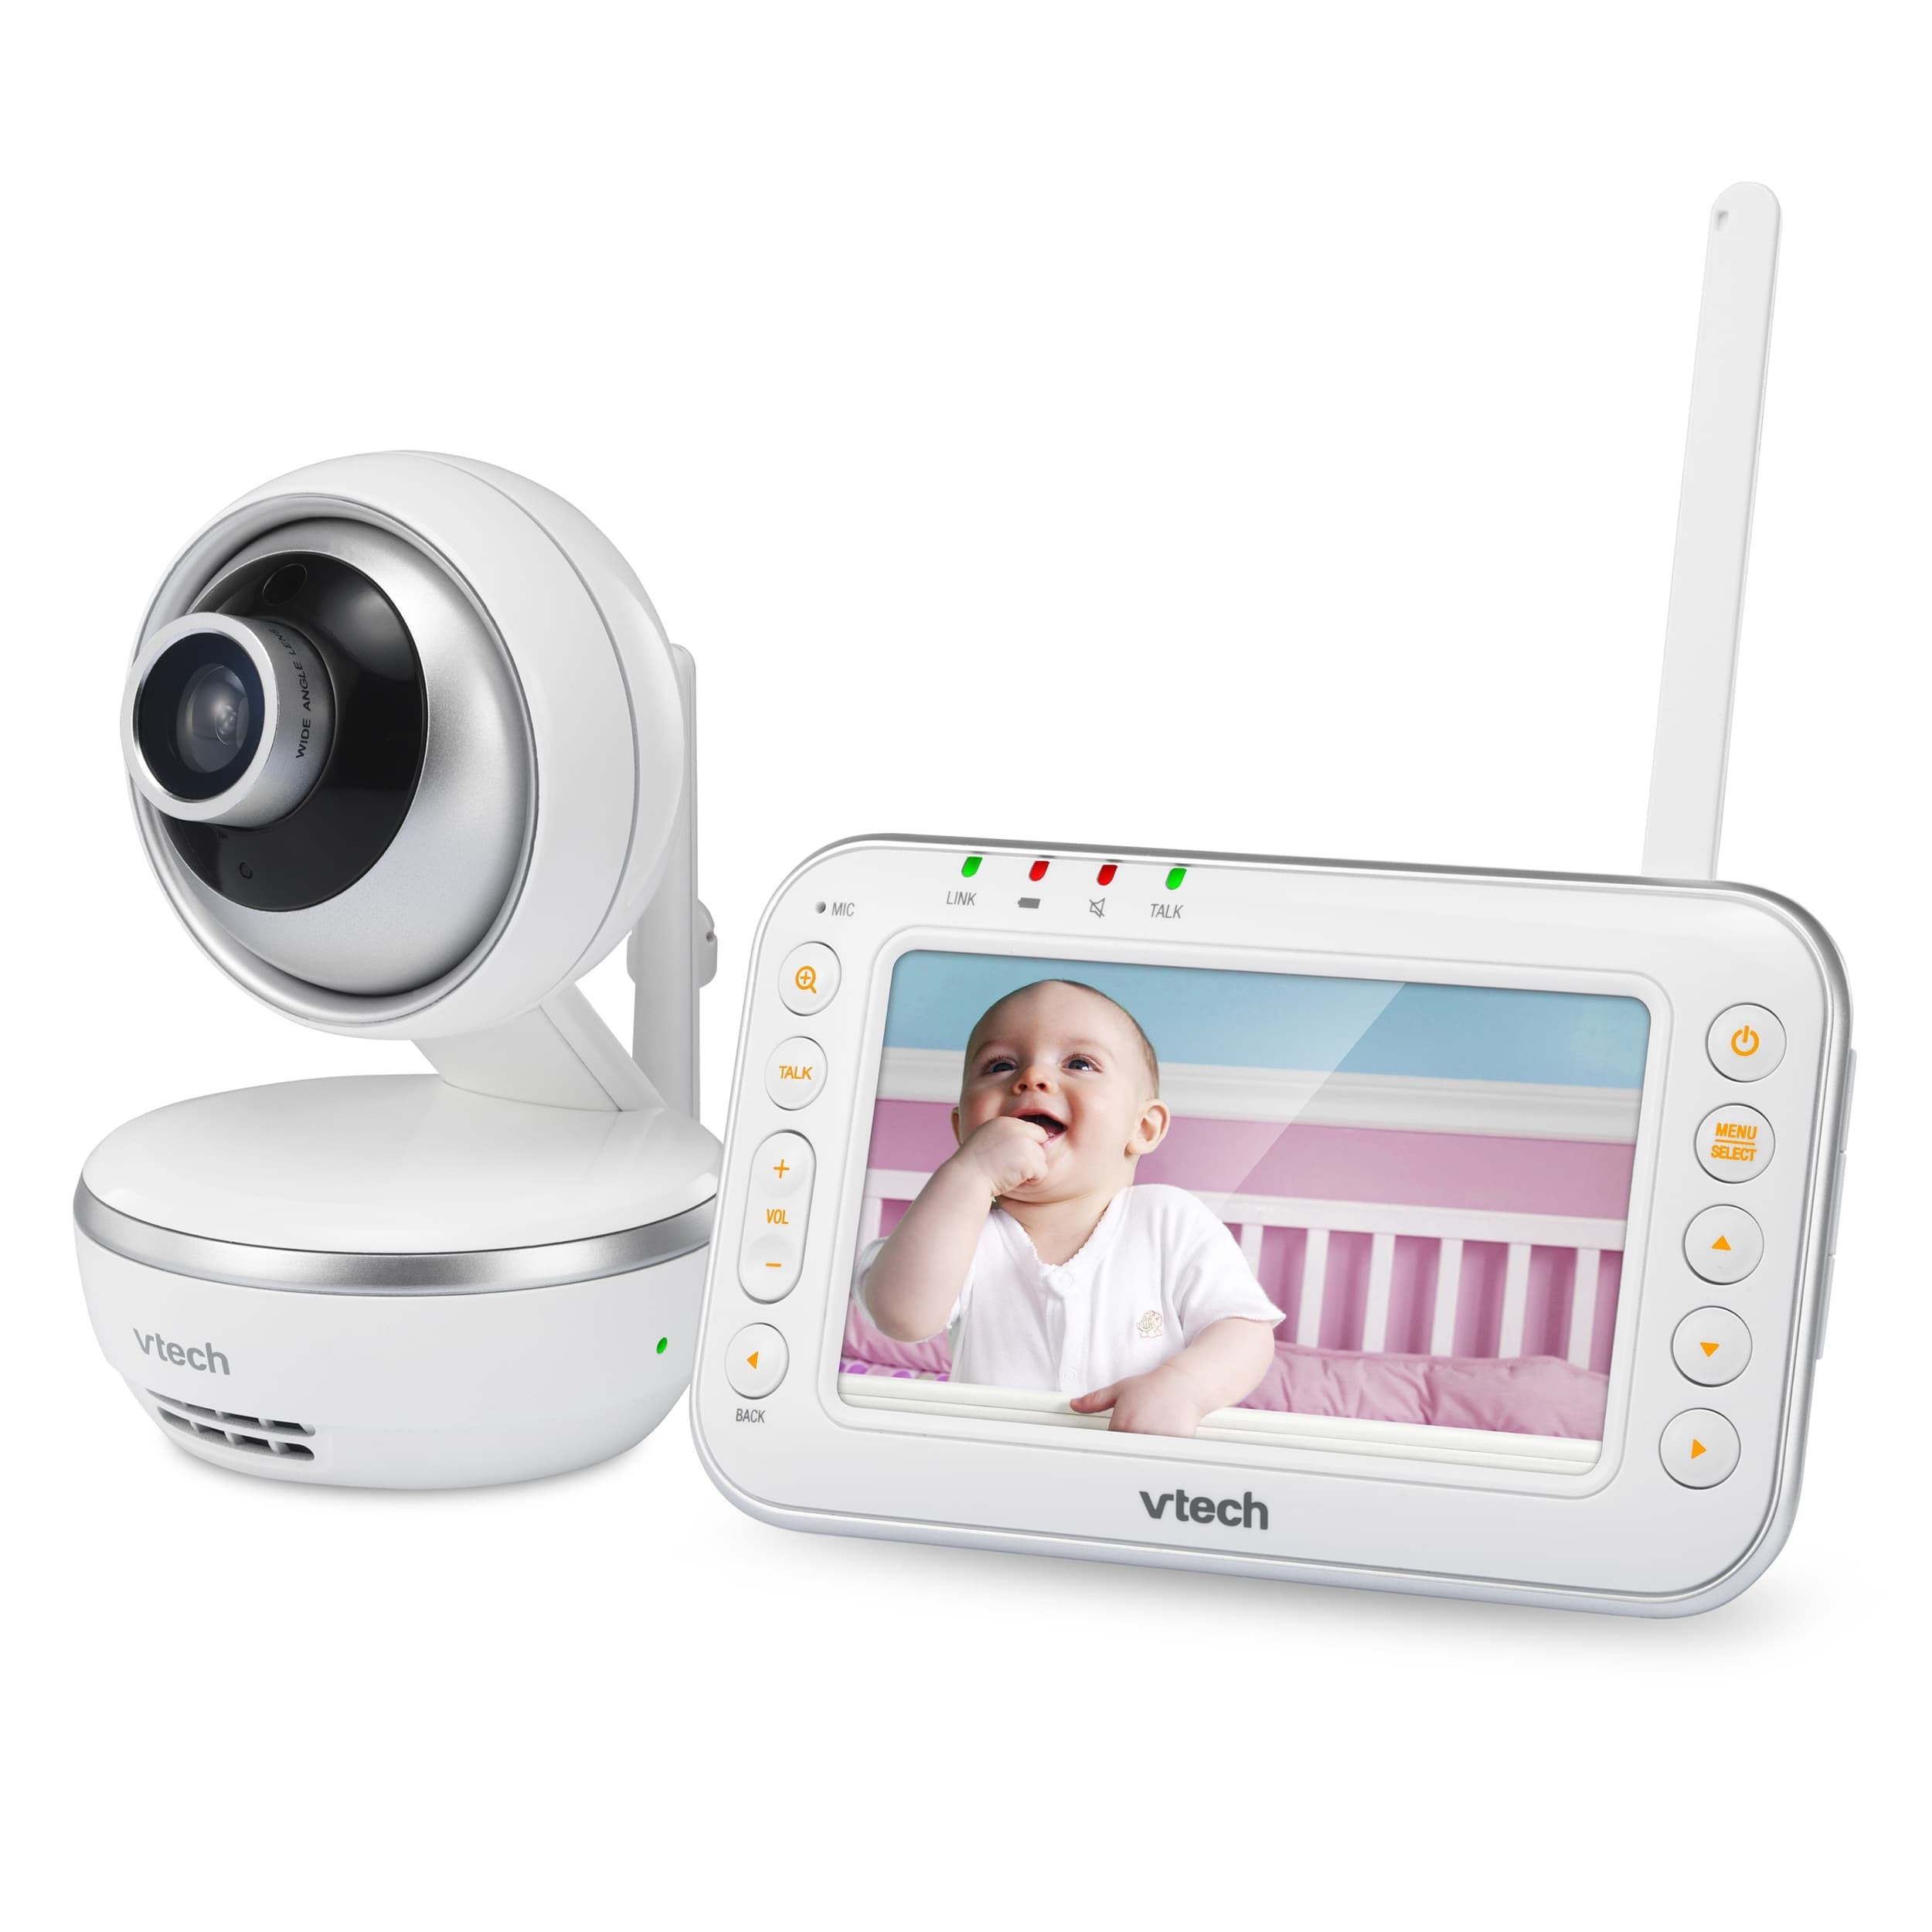 VM4261 Digital Video Baby Monitor with Pan & Tilt Camera